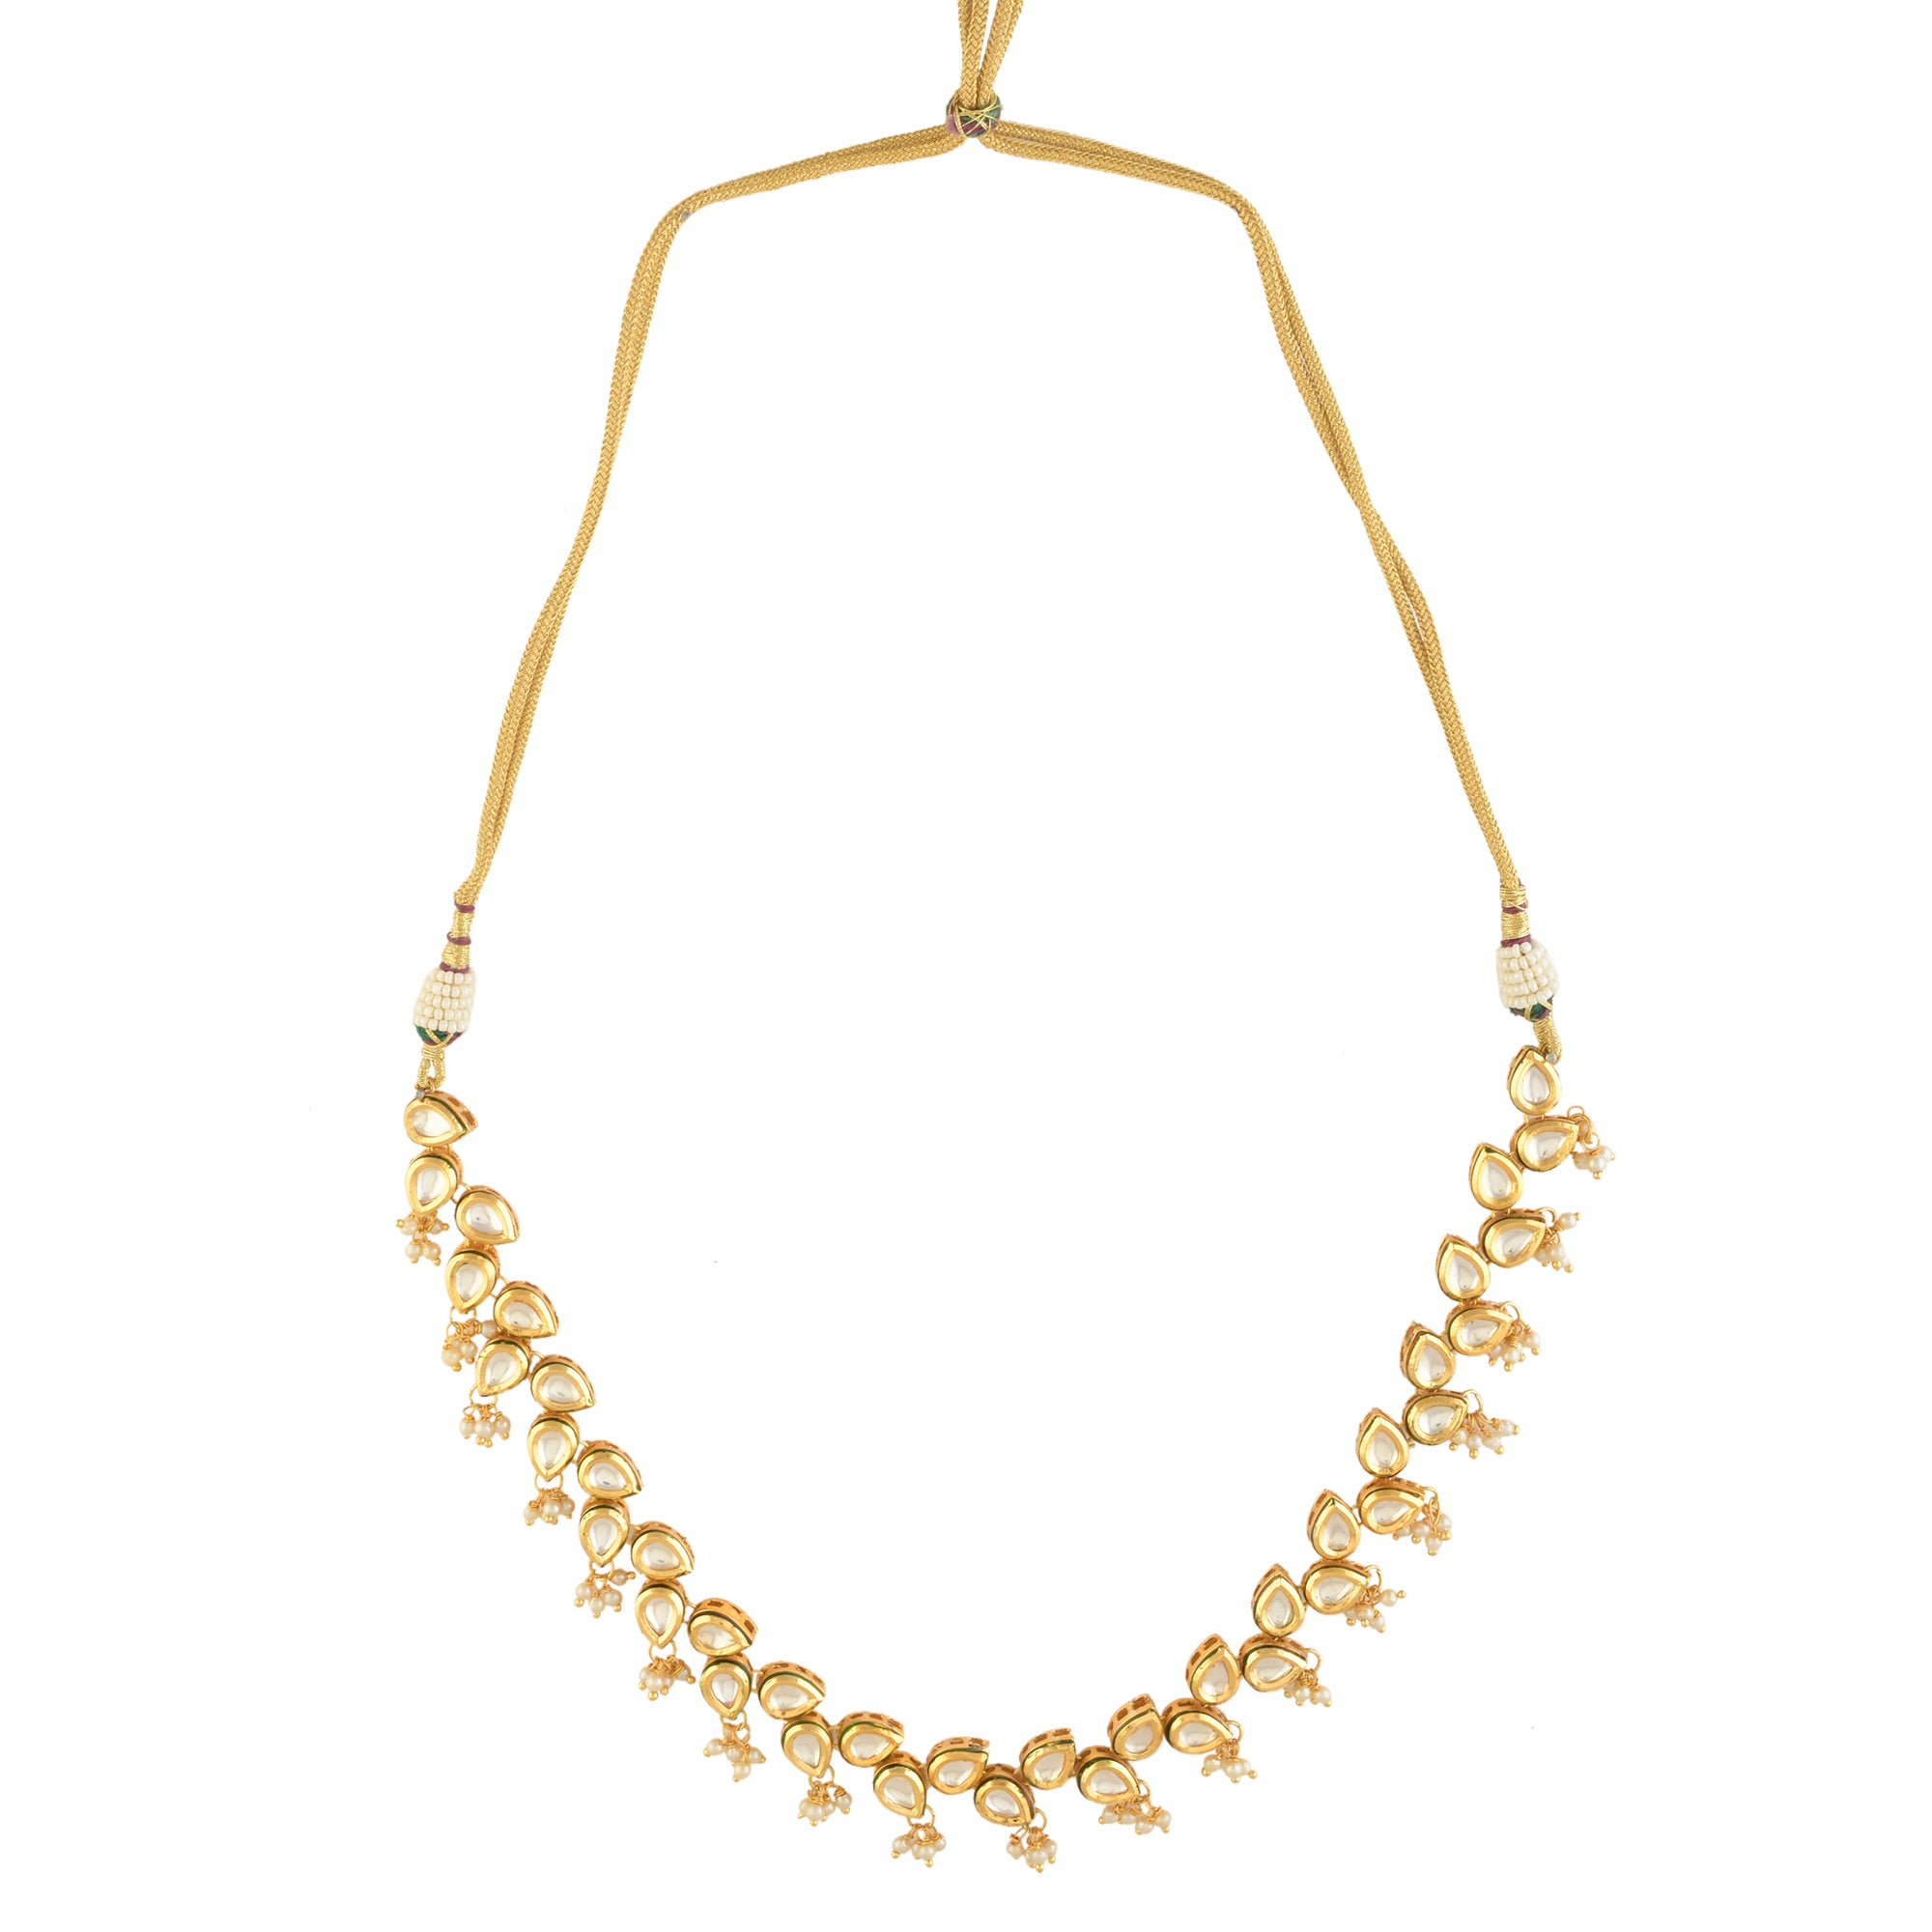 Women's  Elegant Tear drop shaped necklace with earrings - Femizen